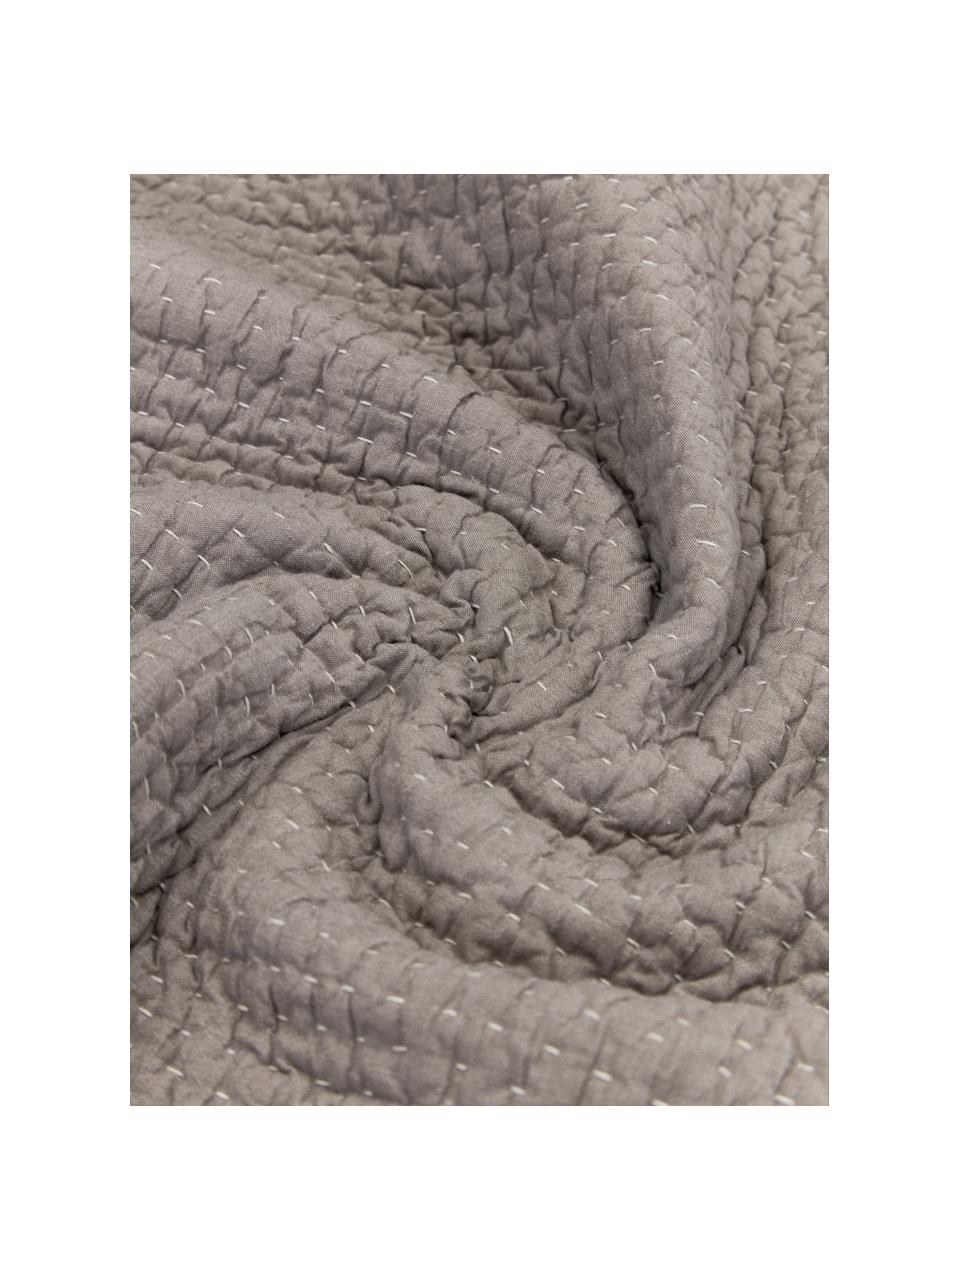 Tagesdecke Stripes aus Baumwolle, Bezug: 100% Baumwolle, Taupe, B 180 x L 250 cm (für Betten bis 140 x 200 cm)